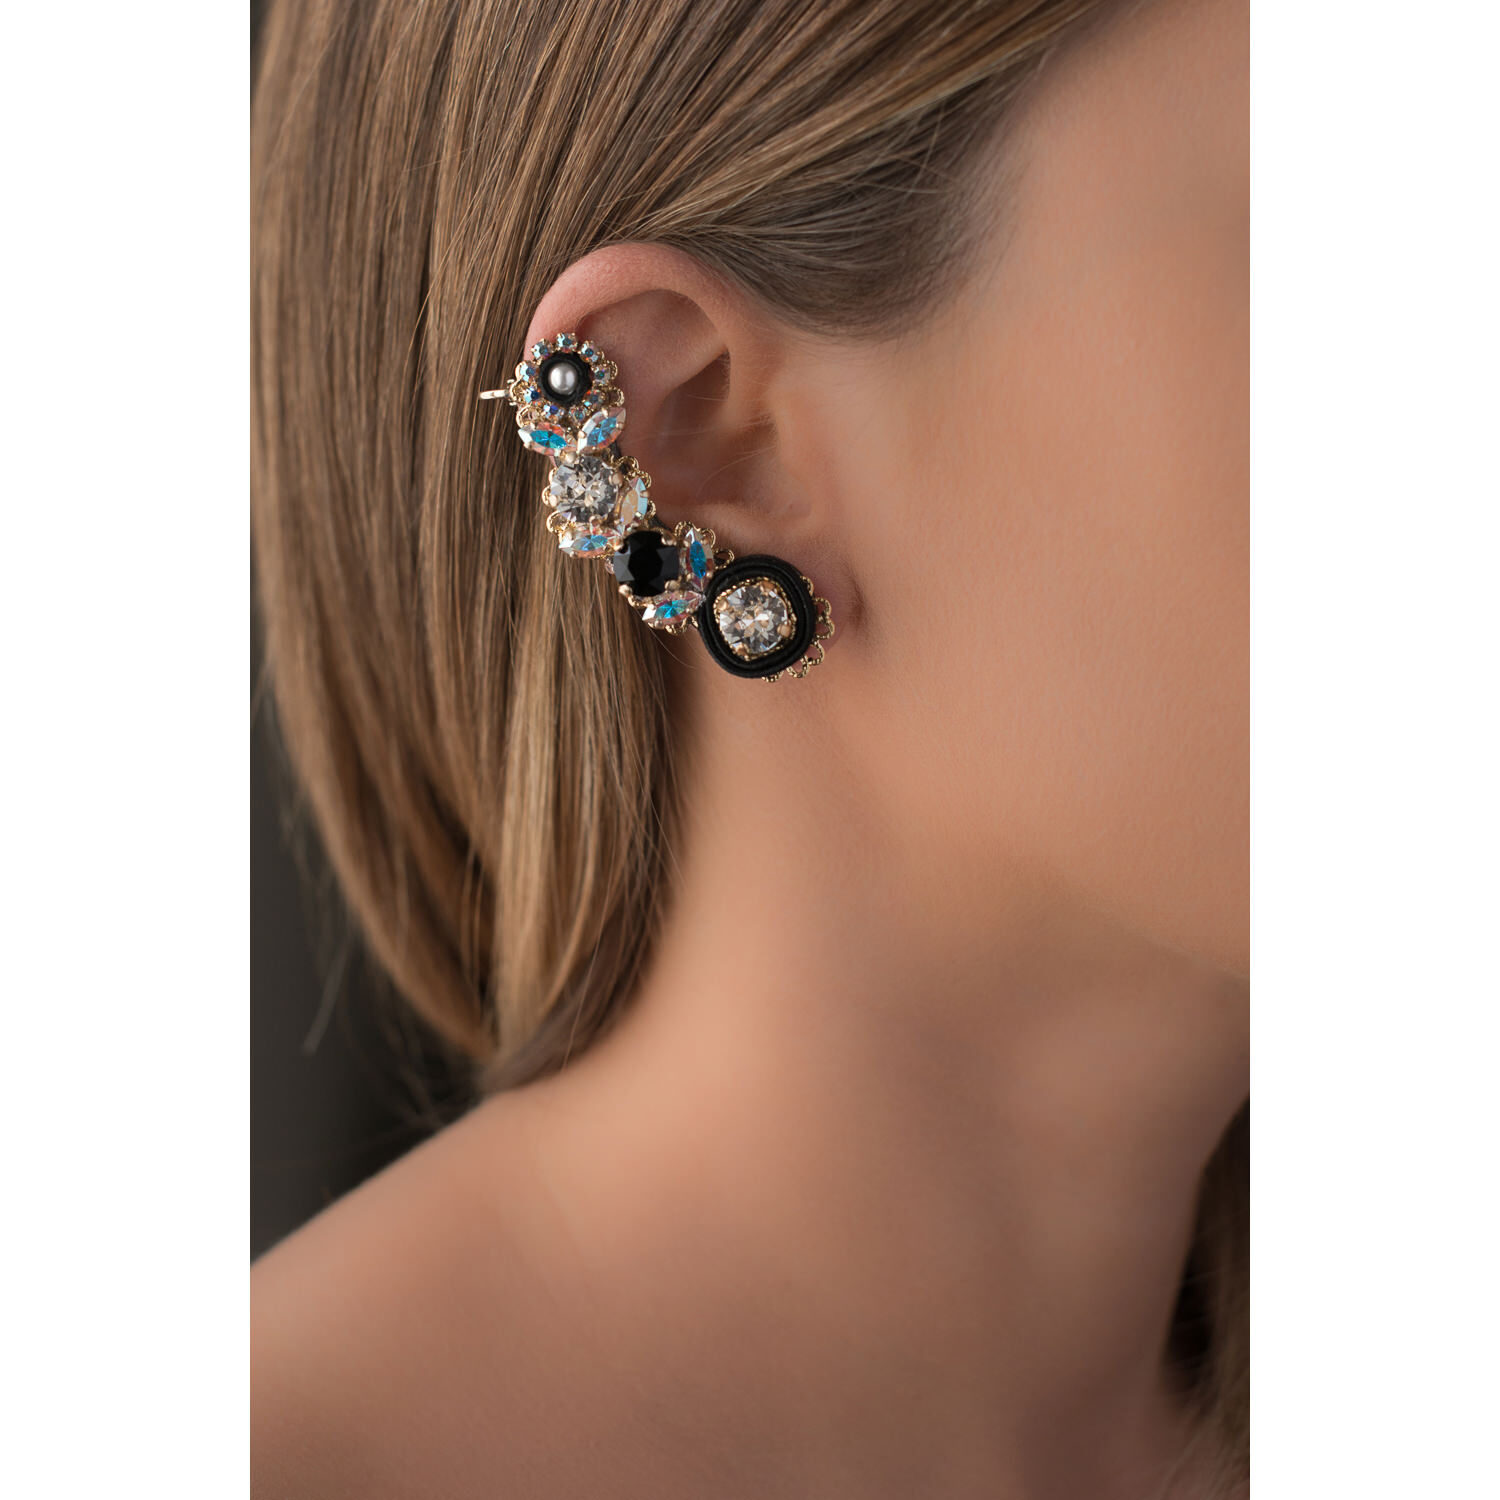 Ear cuff comodo orecchino donna foglie e fiori cristalli swarovski e zirconi colorati, dettagli in stoffa seta